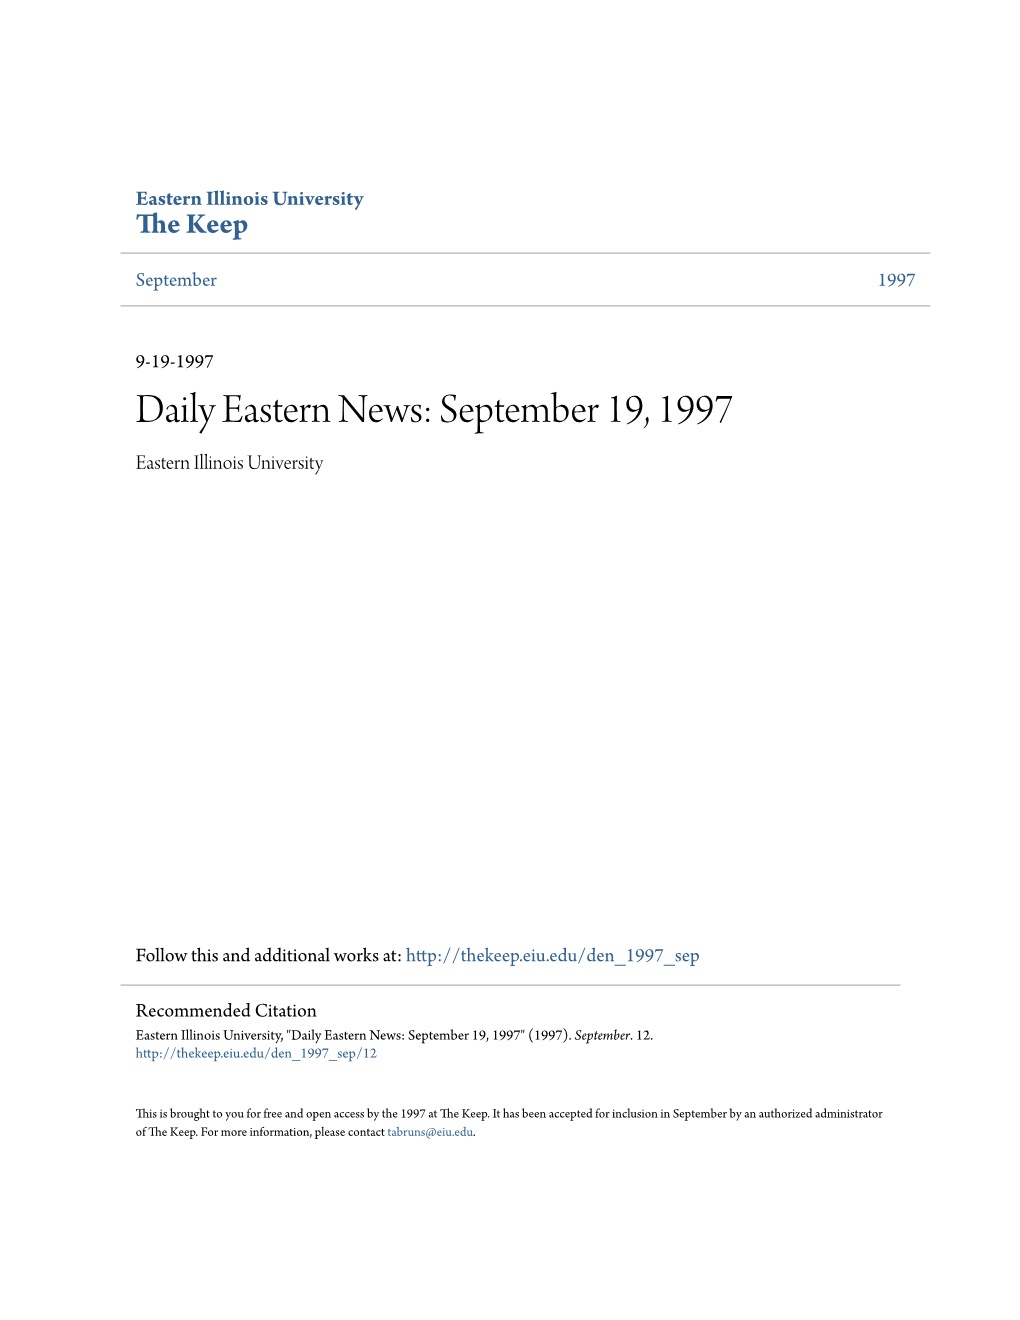 Daily Eastern News: September 19, 1997 Eastern Illinois University